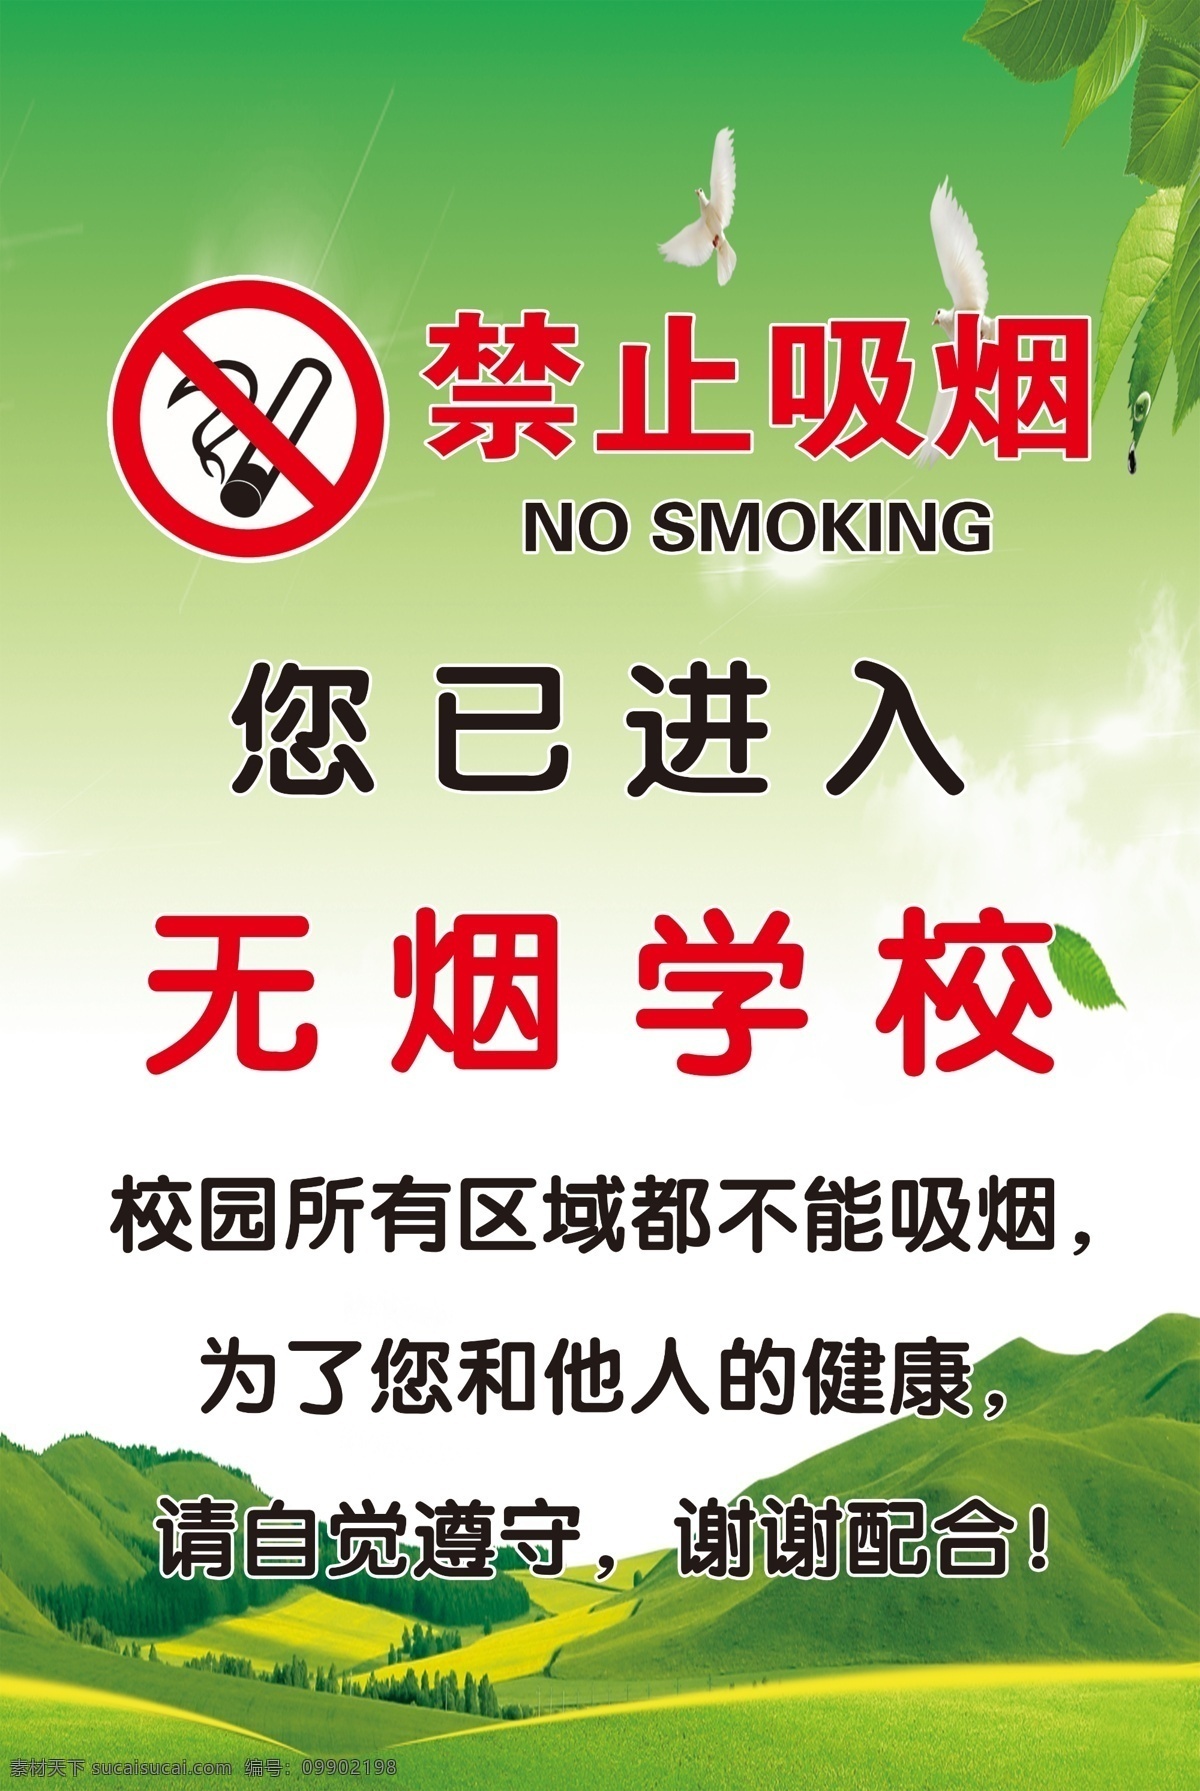 禁止吸烟 无烟学校 禁烟标识 禁烟标志 学校不能吸烟 吸烟 烟 学校禁烟